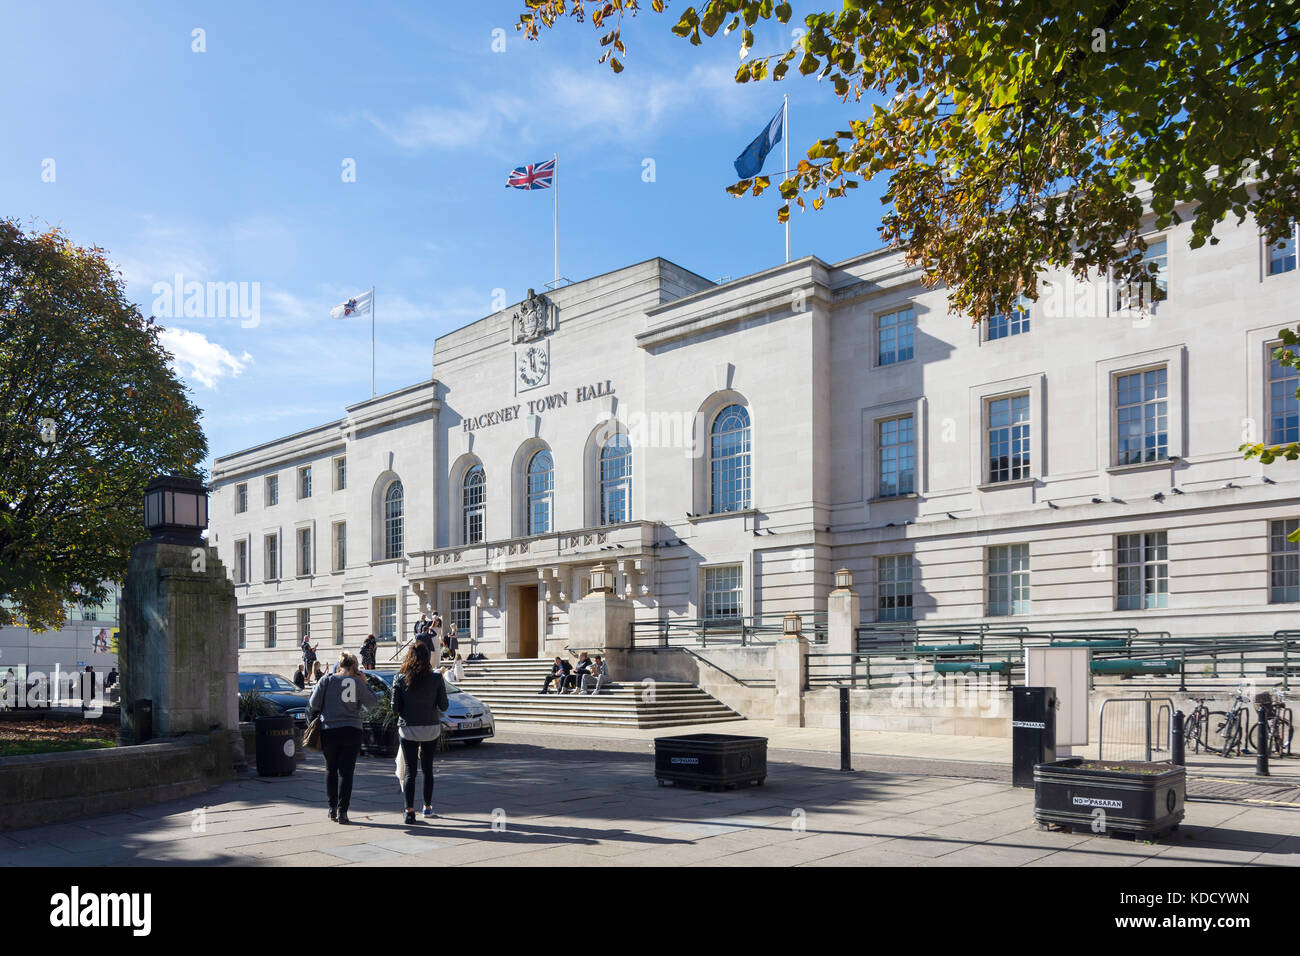 Hackney Rathaus, Mare Street, Hackney Central, London Stadtteil Hackney, Greater London, England, Vereinigtes Königreich Stockfoto